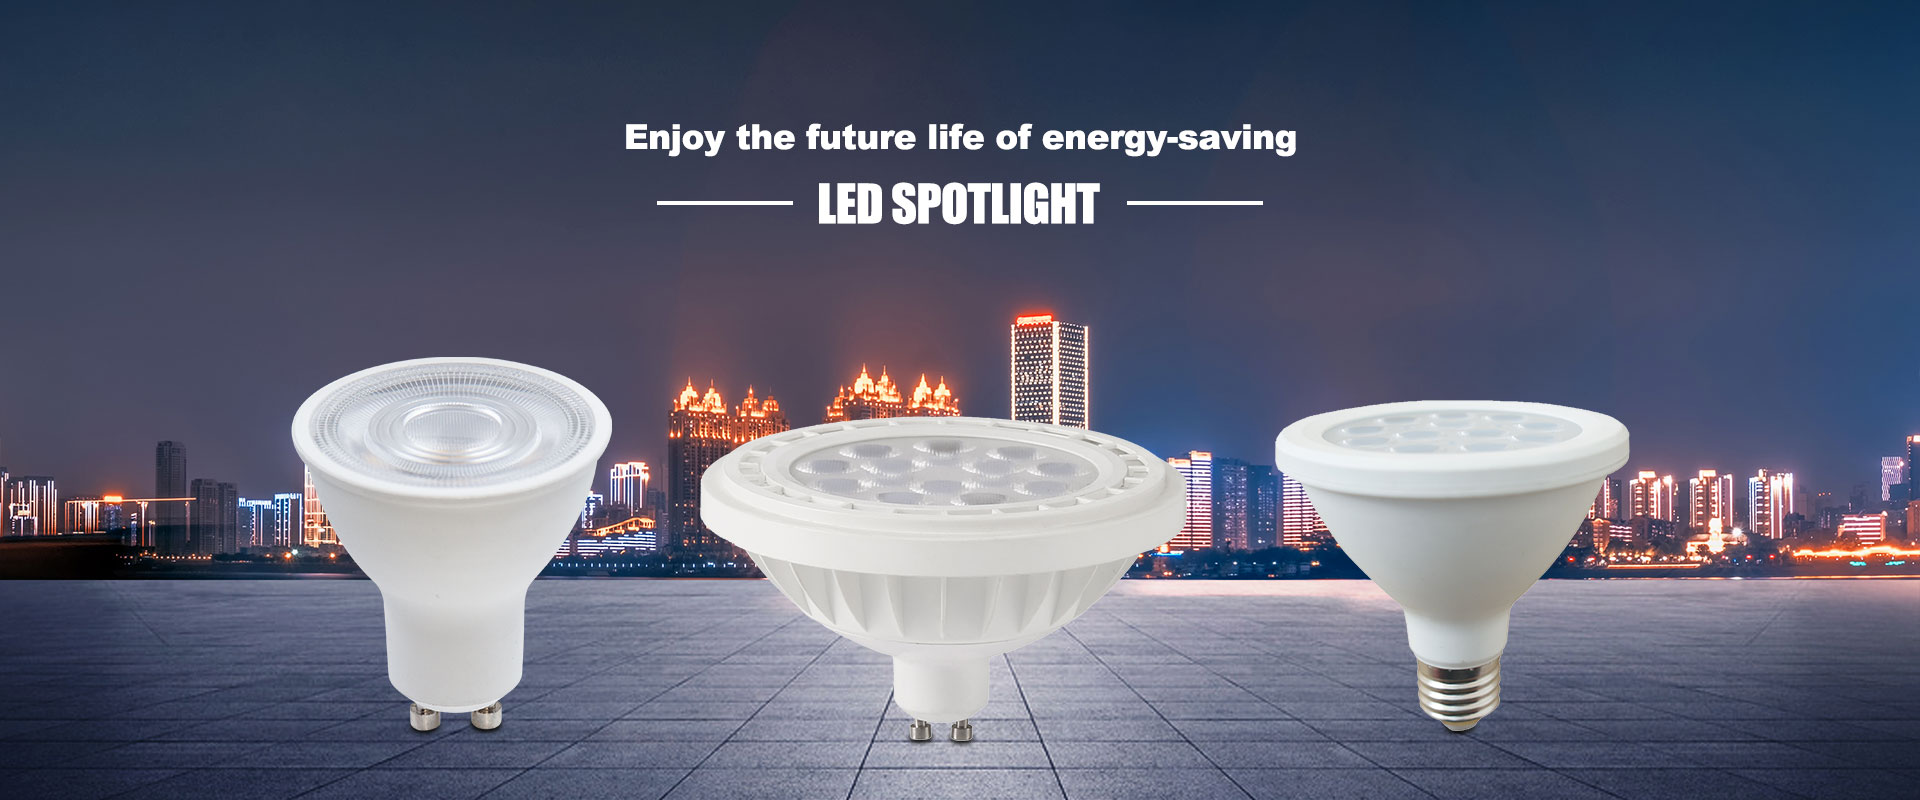 Kitajska tovarna LED reflektorjev